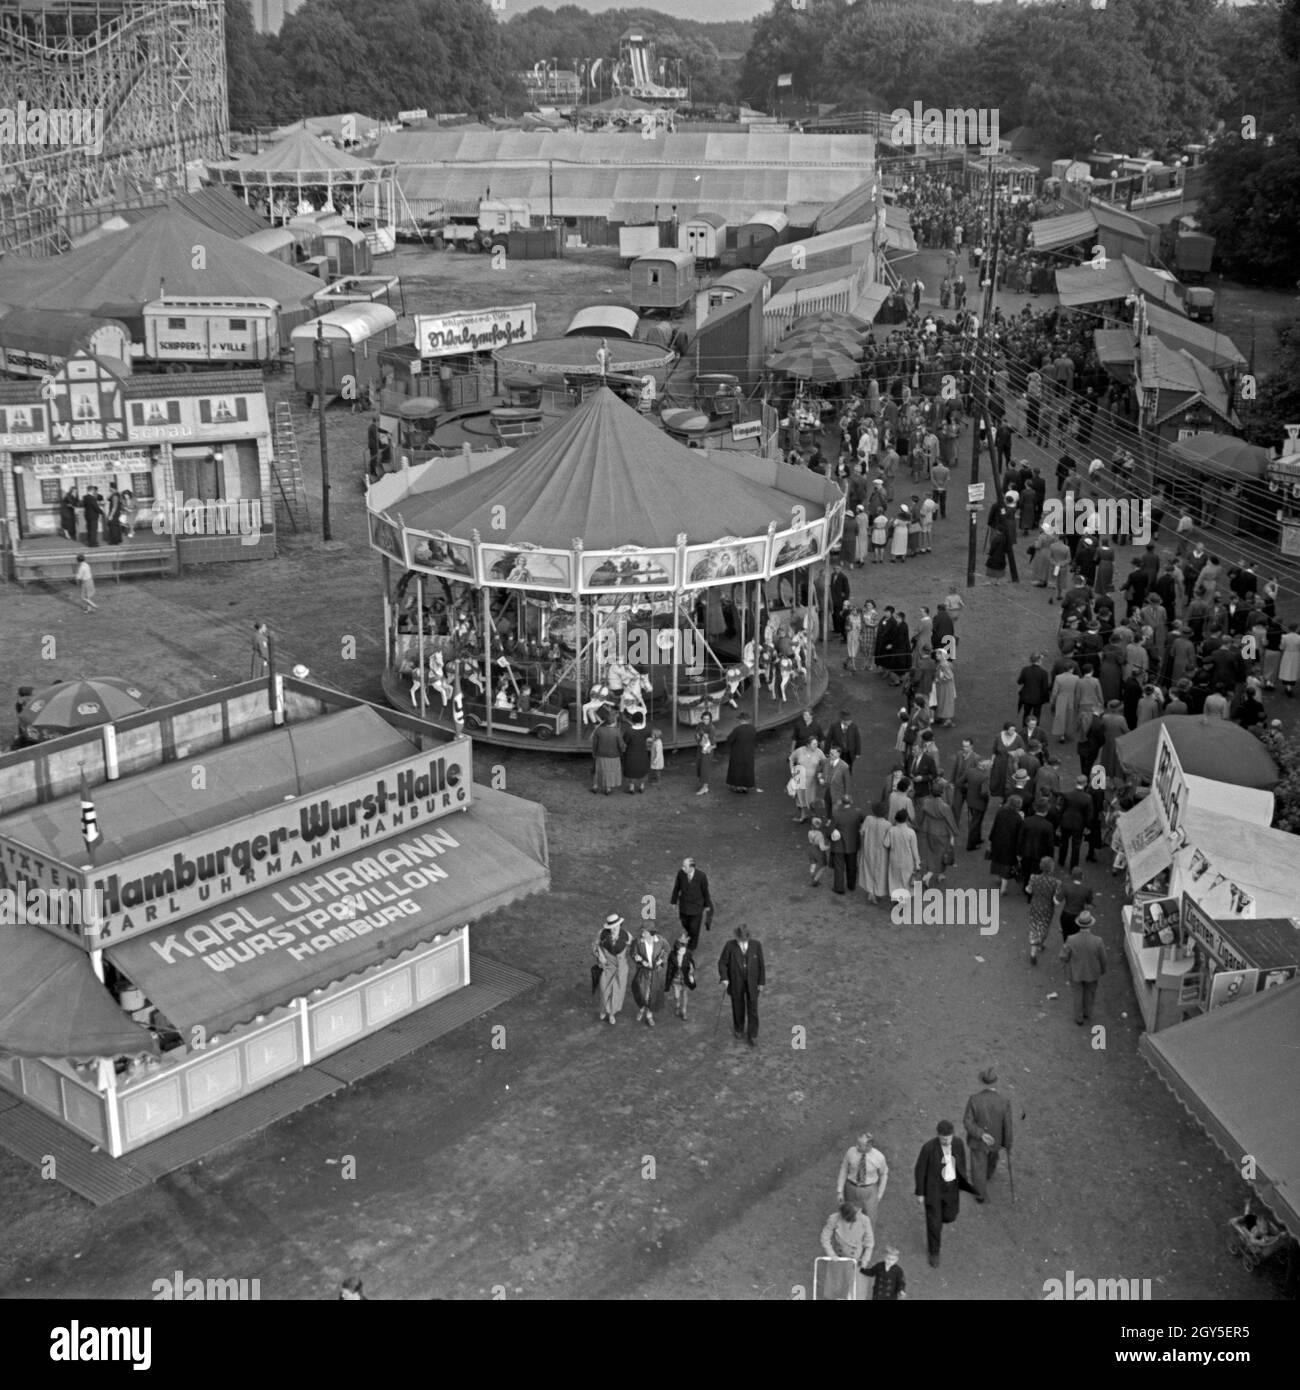 Blick auf die Festwiese in Berlin Stralau, Deutschland 1930er Jahre. Luftaufnahme des Berlin Stralau jährliche Messe, Deutschland 1930. Stockfoto